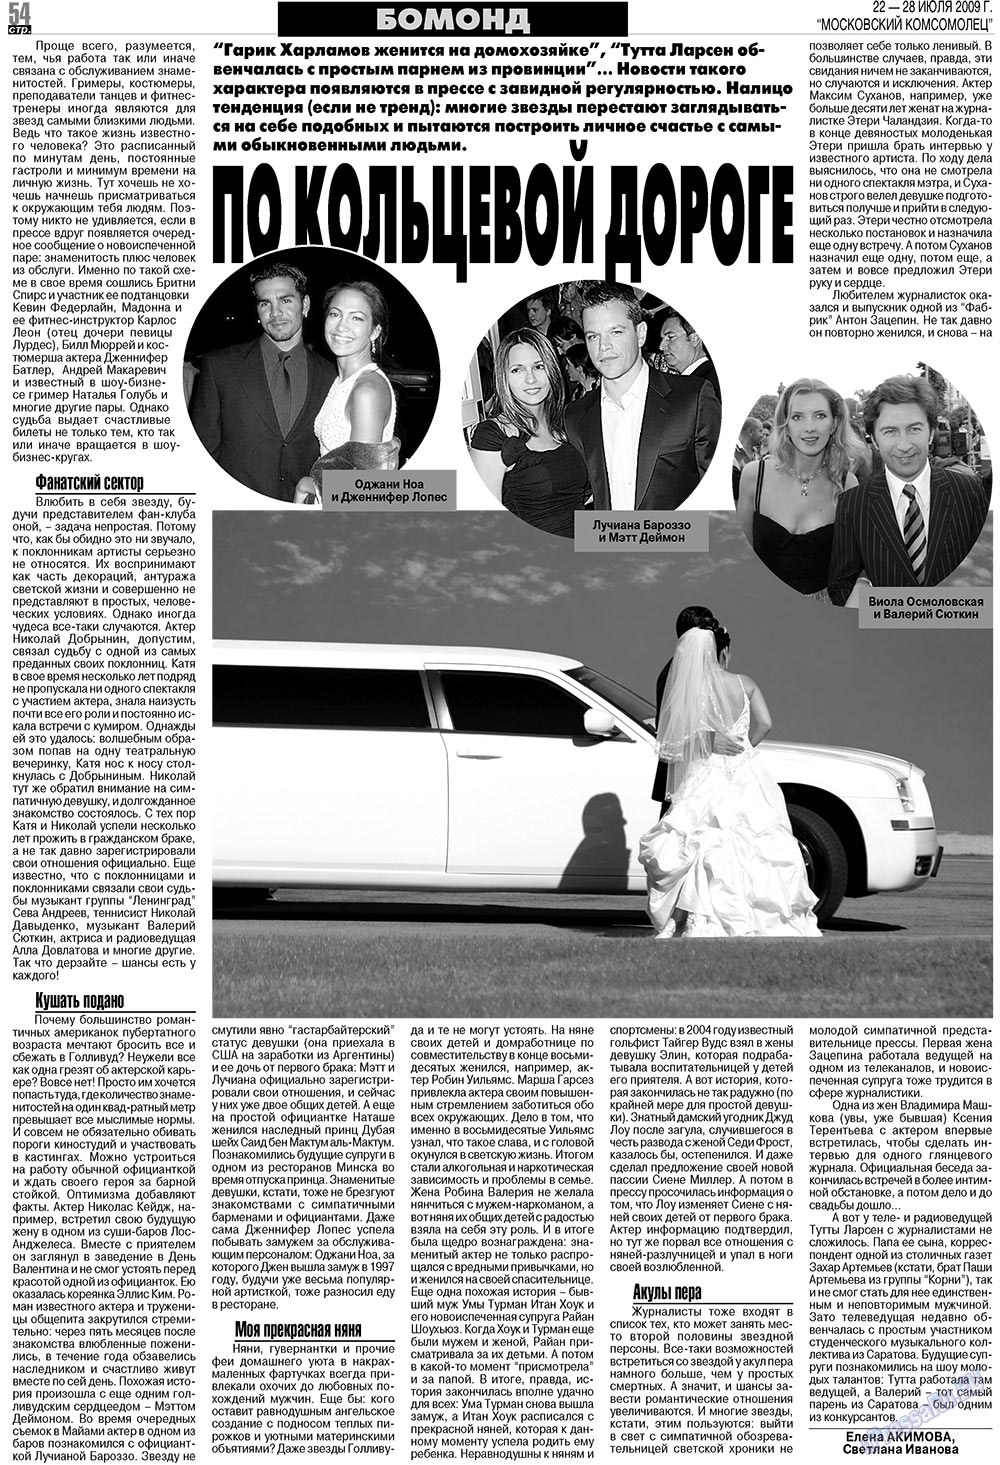 МК Испания, газета. 2009 №30 стр.54